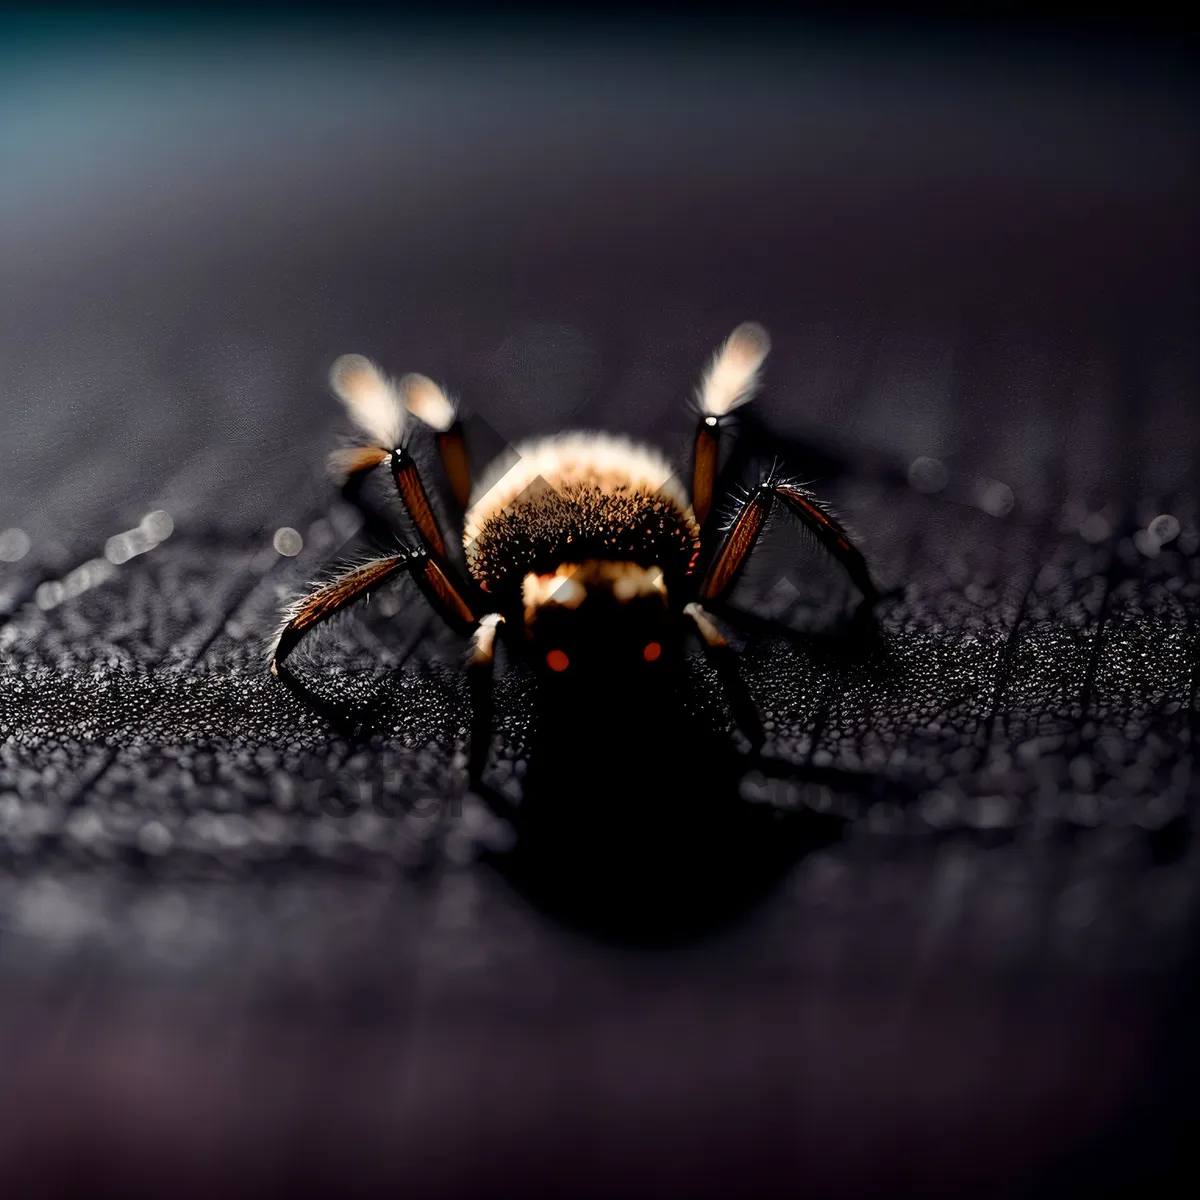 Picture of Elegant Arachnid Close-up: Black Widow Spider